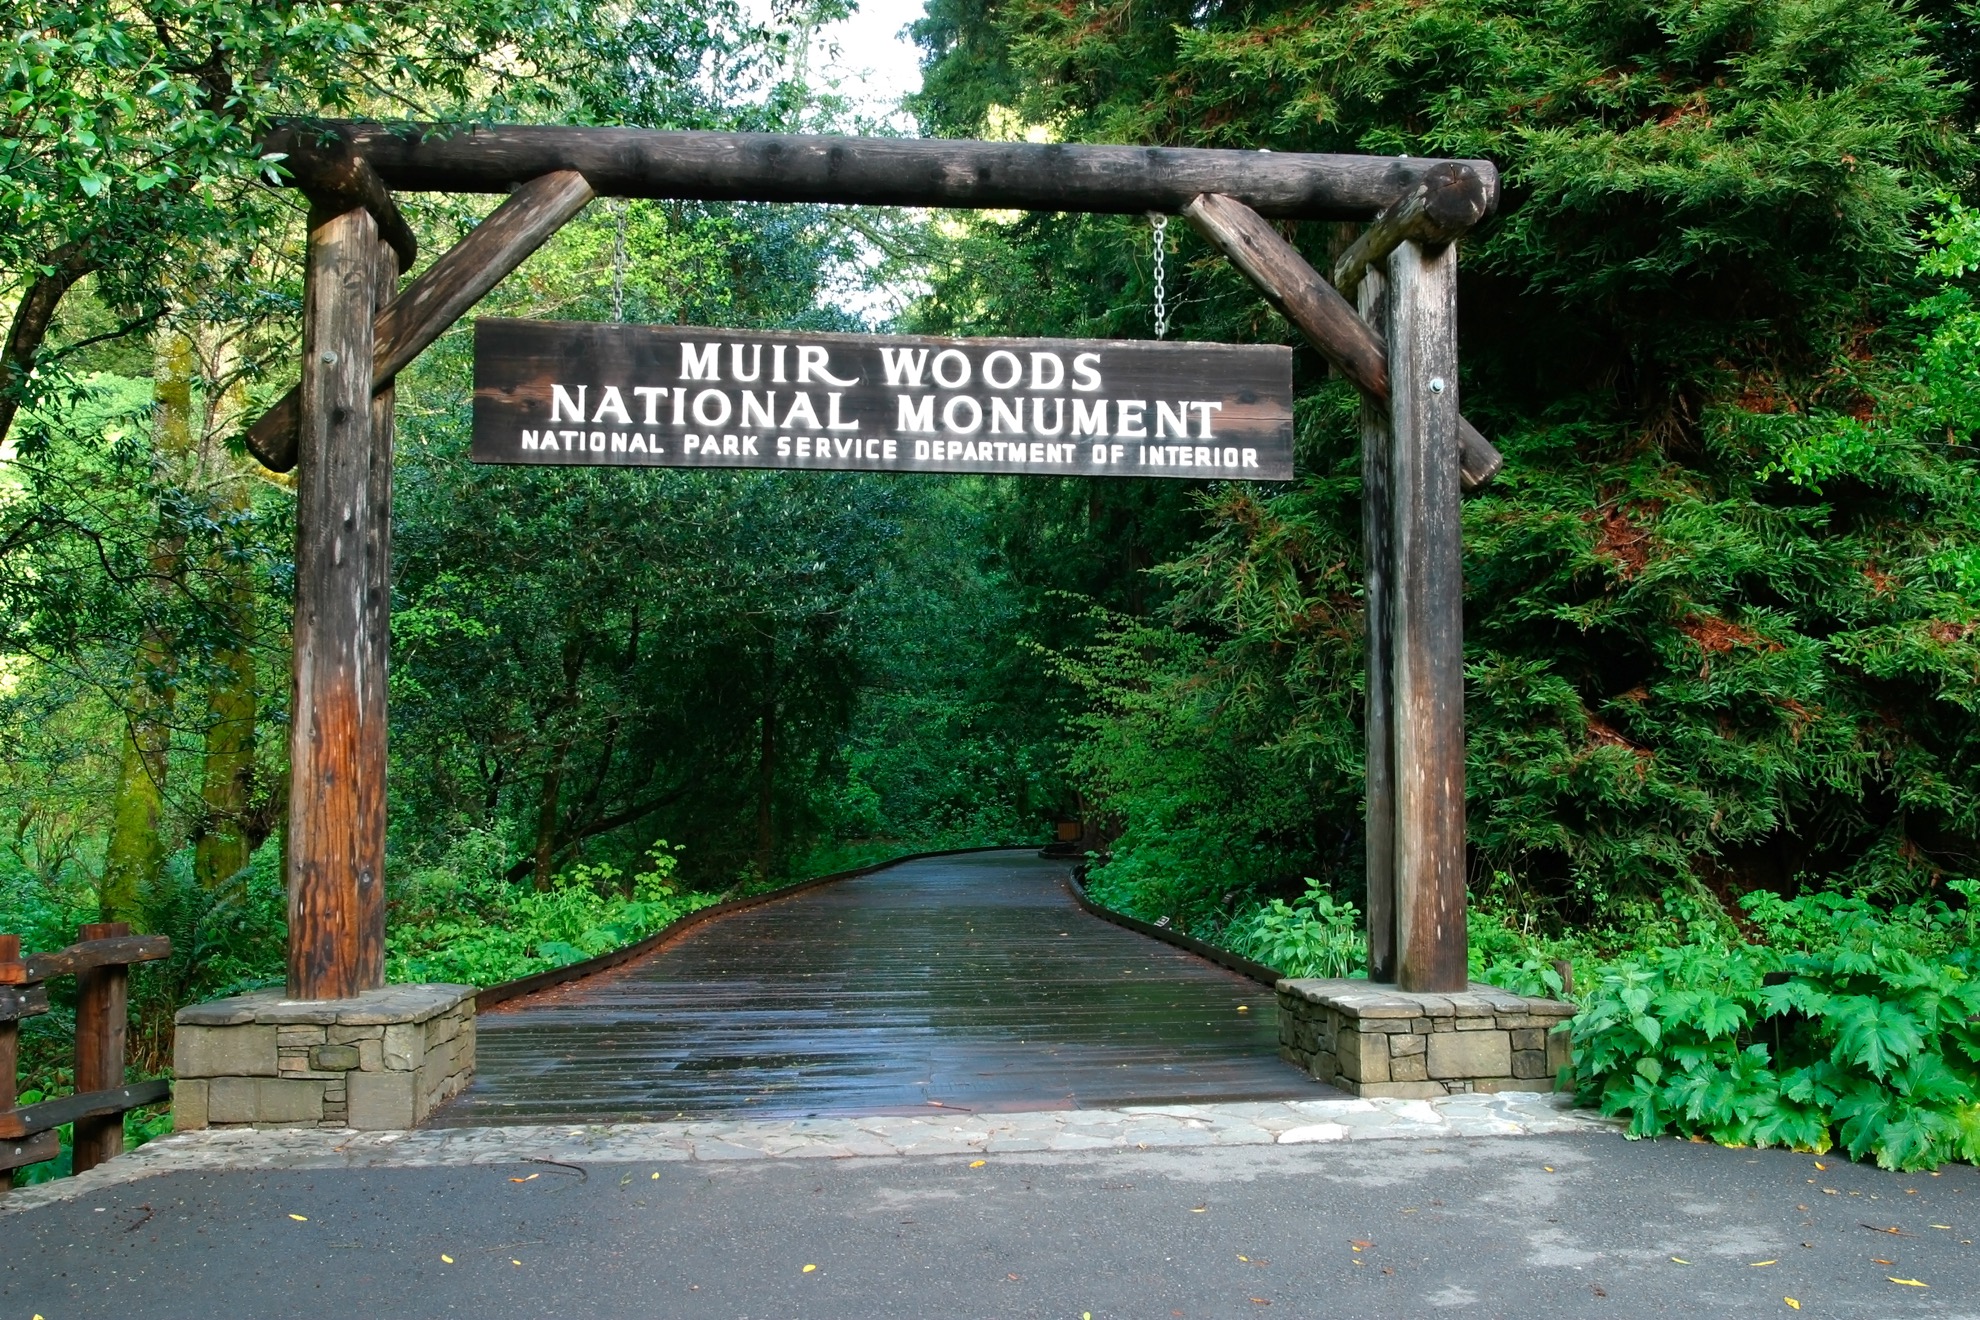 Cómo pasar un día perfecto en el Monumento Nacional Muir Woods - 3